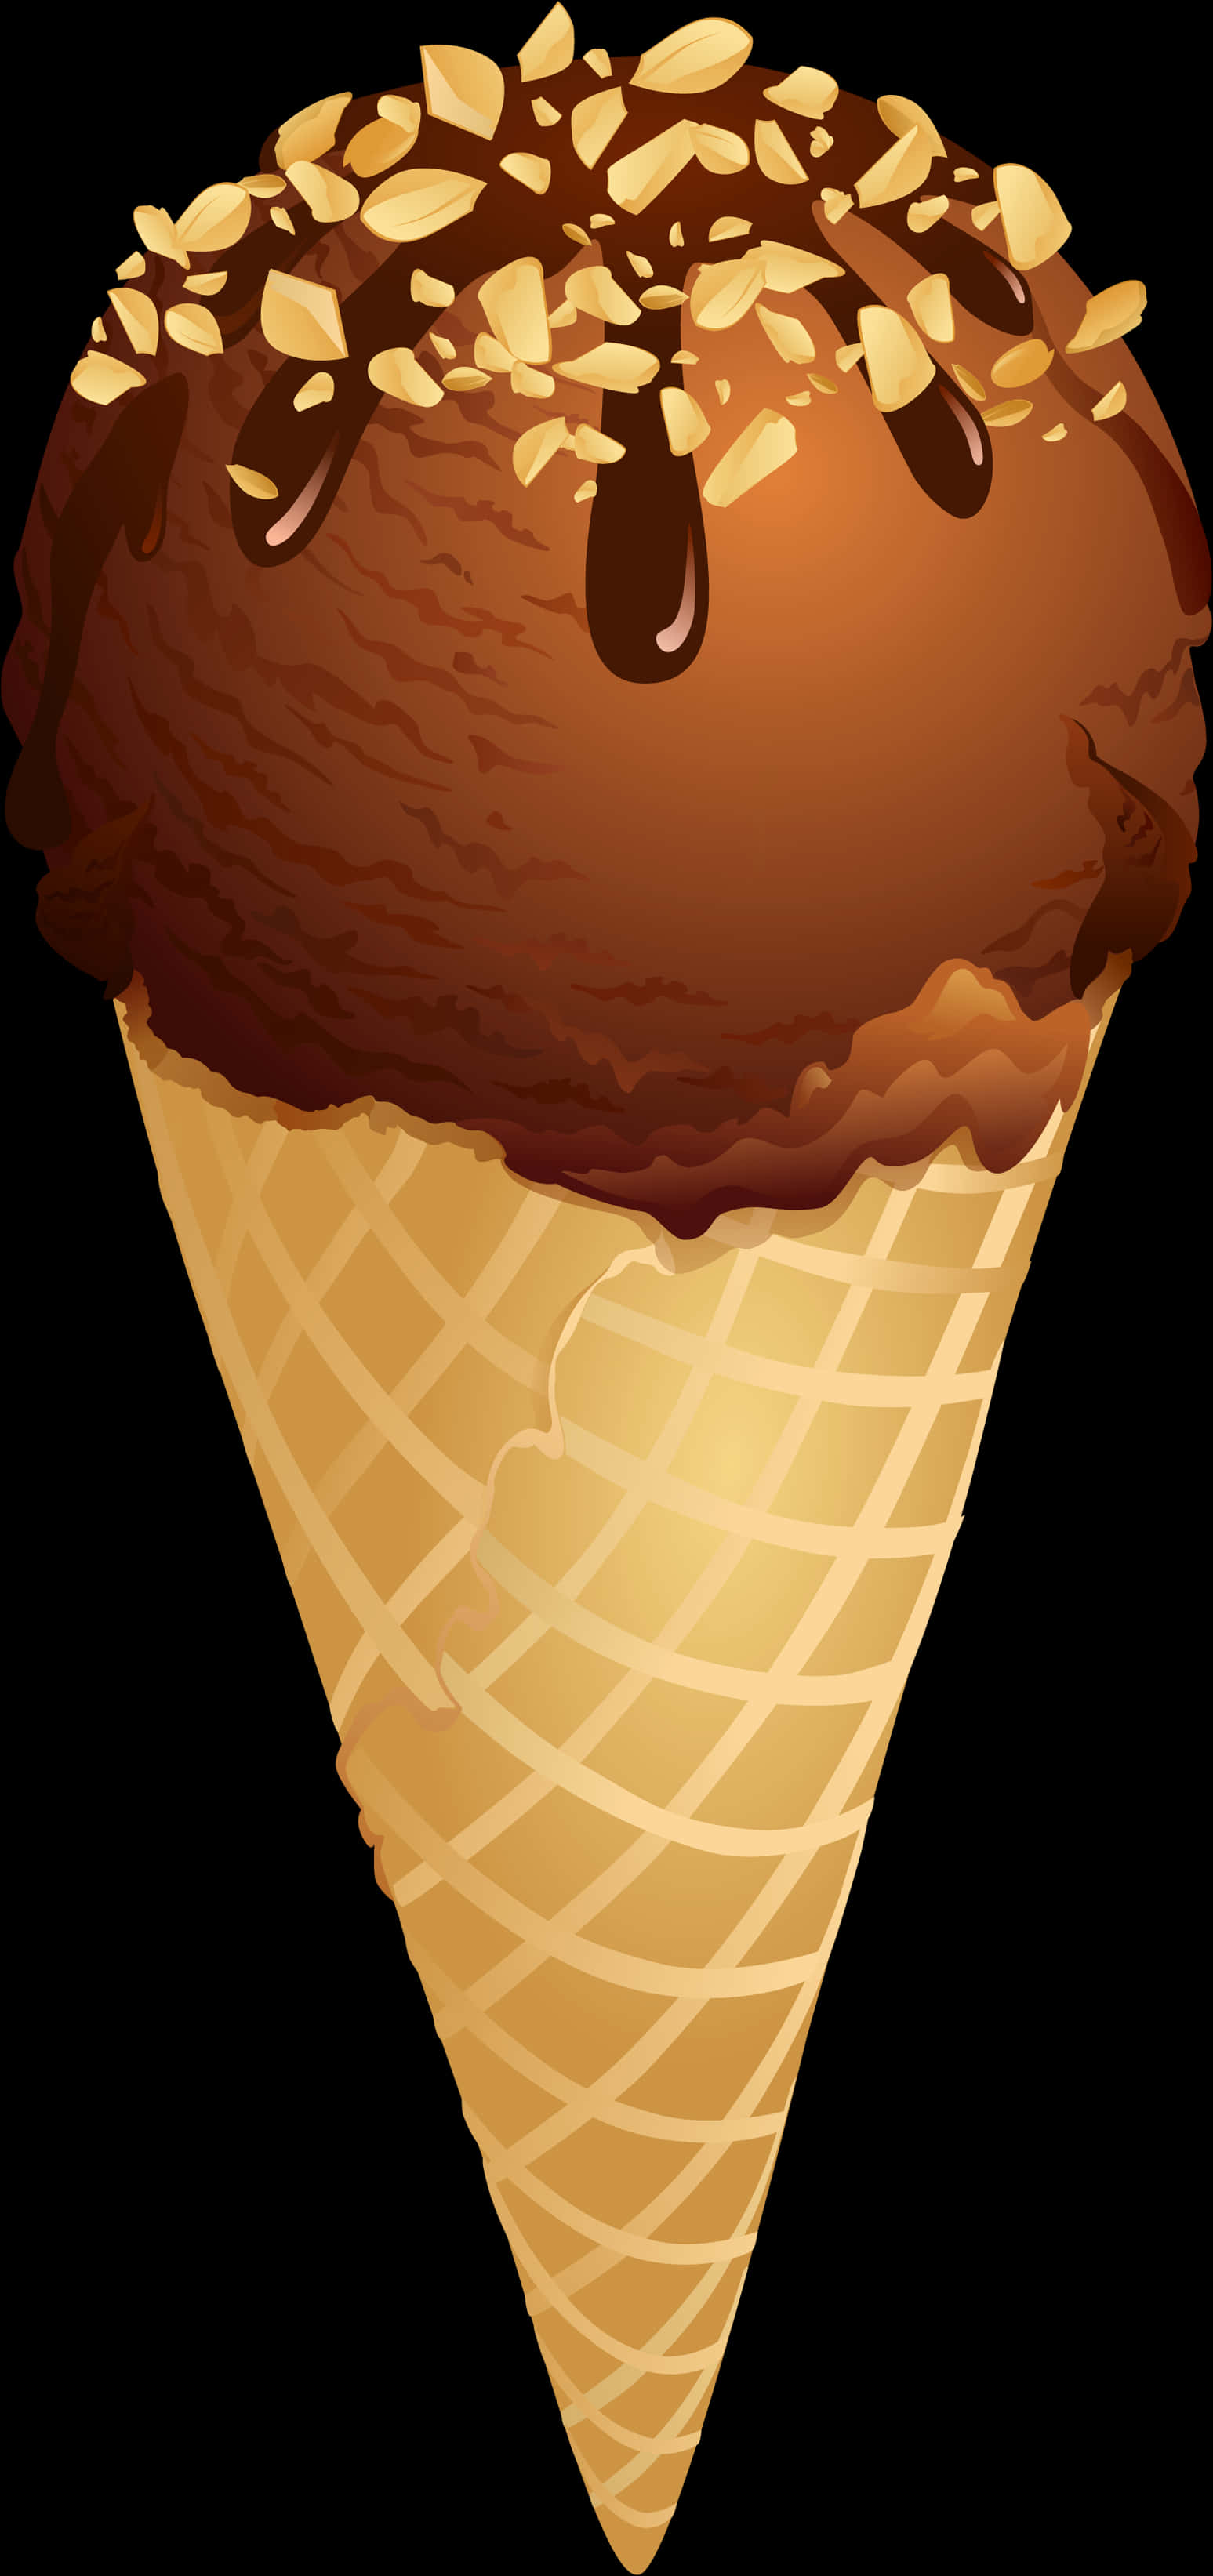 Chocolate Almond Ice Cream Cone Clipart